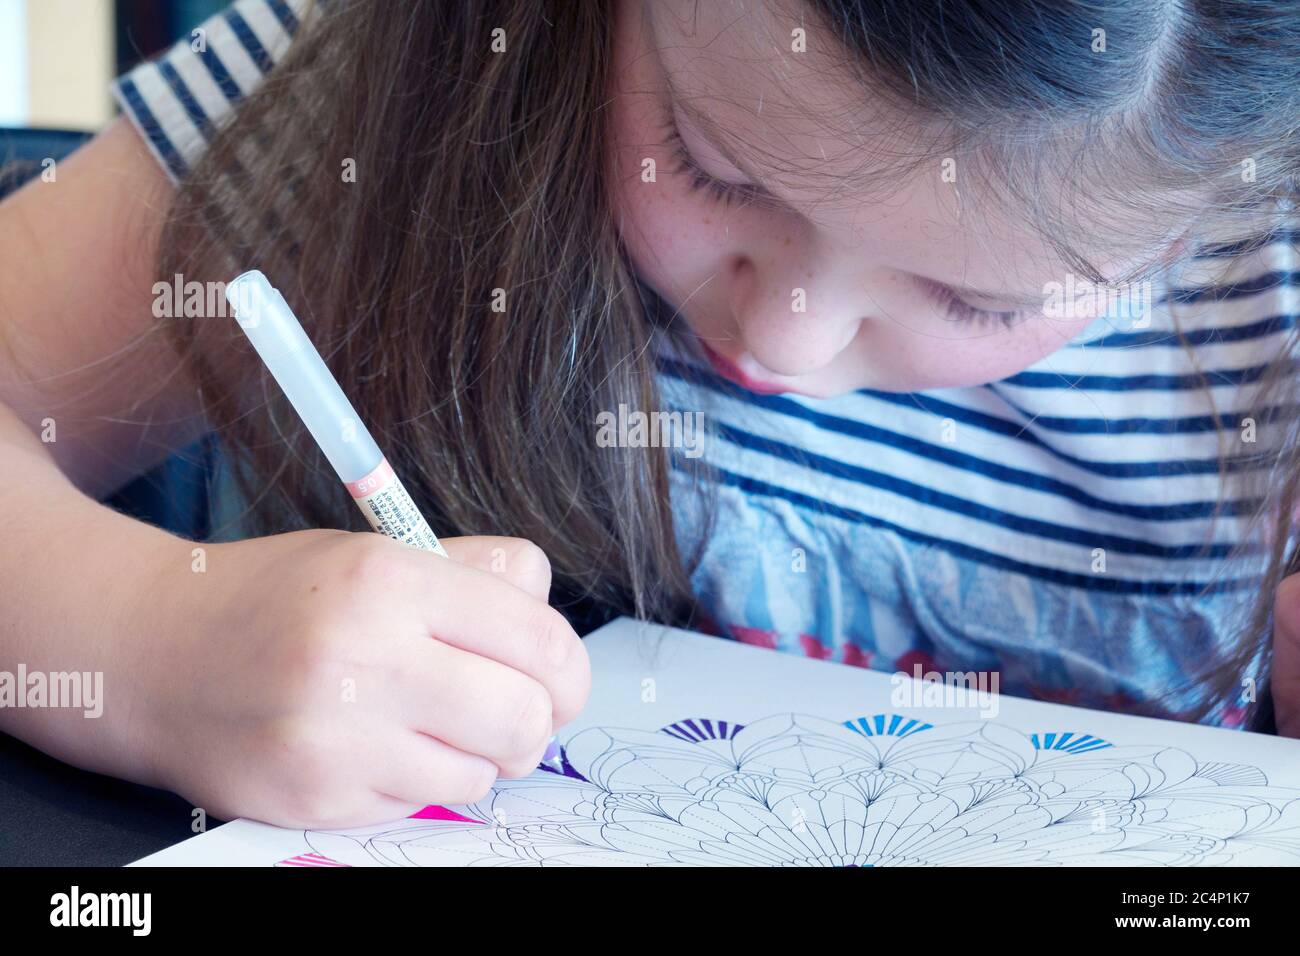 Un enfant s'est assis à la maison et se concentre sur la coloration dure dans un livre de coloriage pour adultes avec des stylos de couleur assortis Banque D'Images